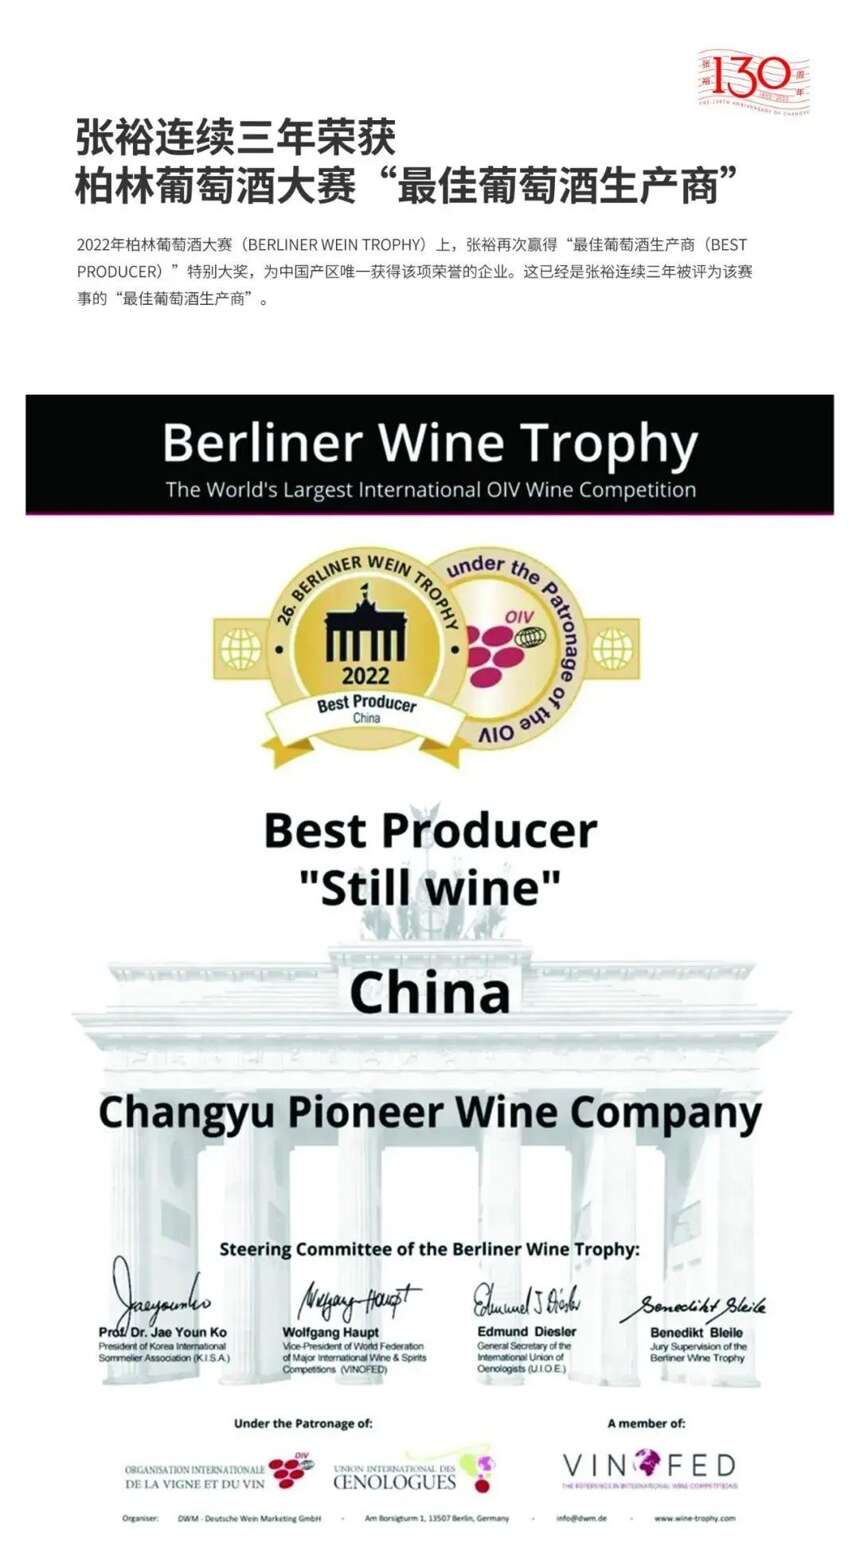 事虽难，做则必成——自信的张裕让中国葡萄酒平视世界